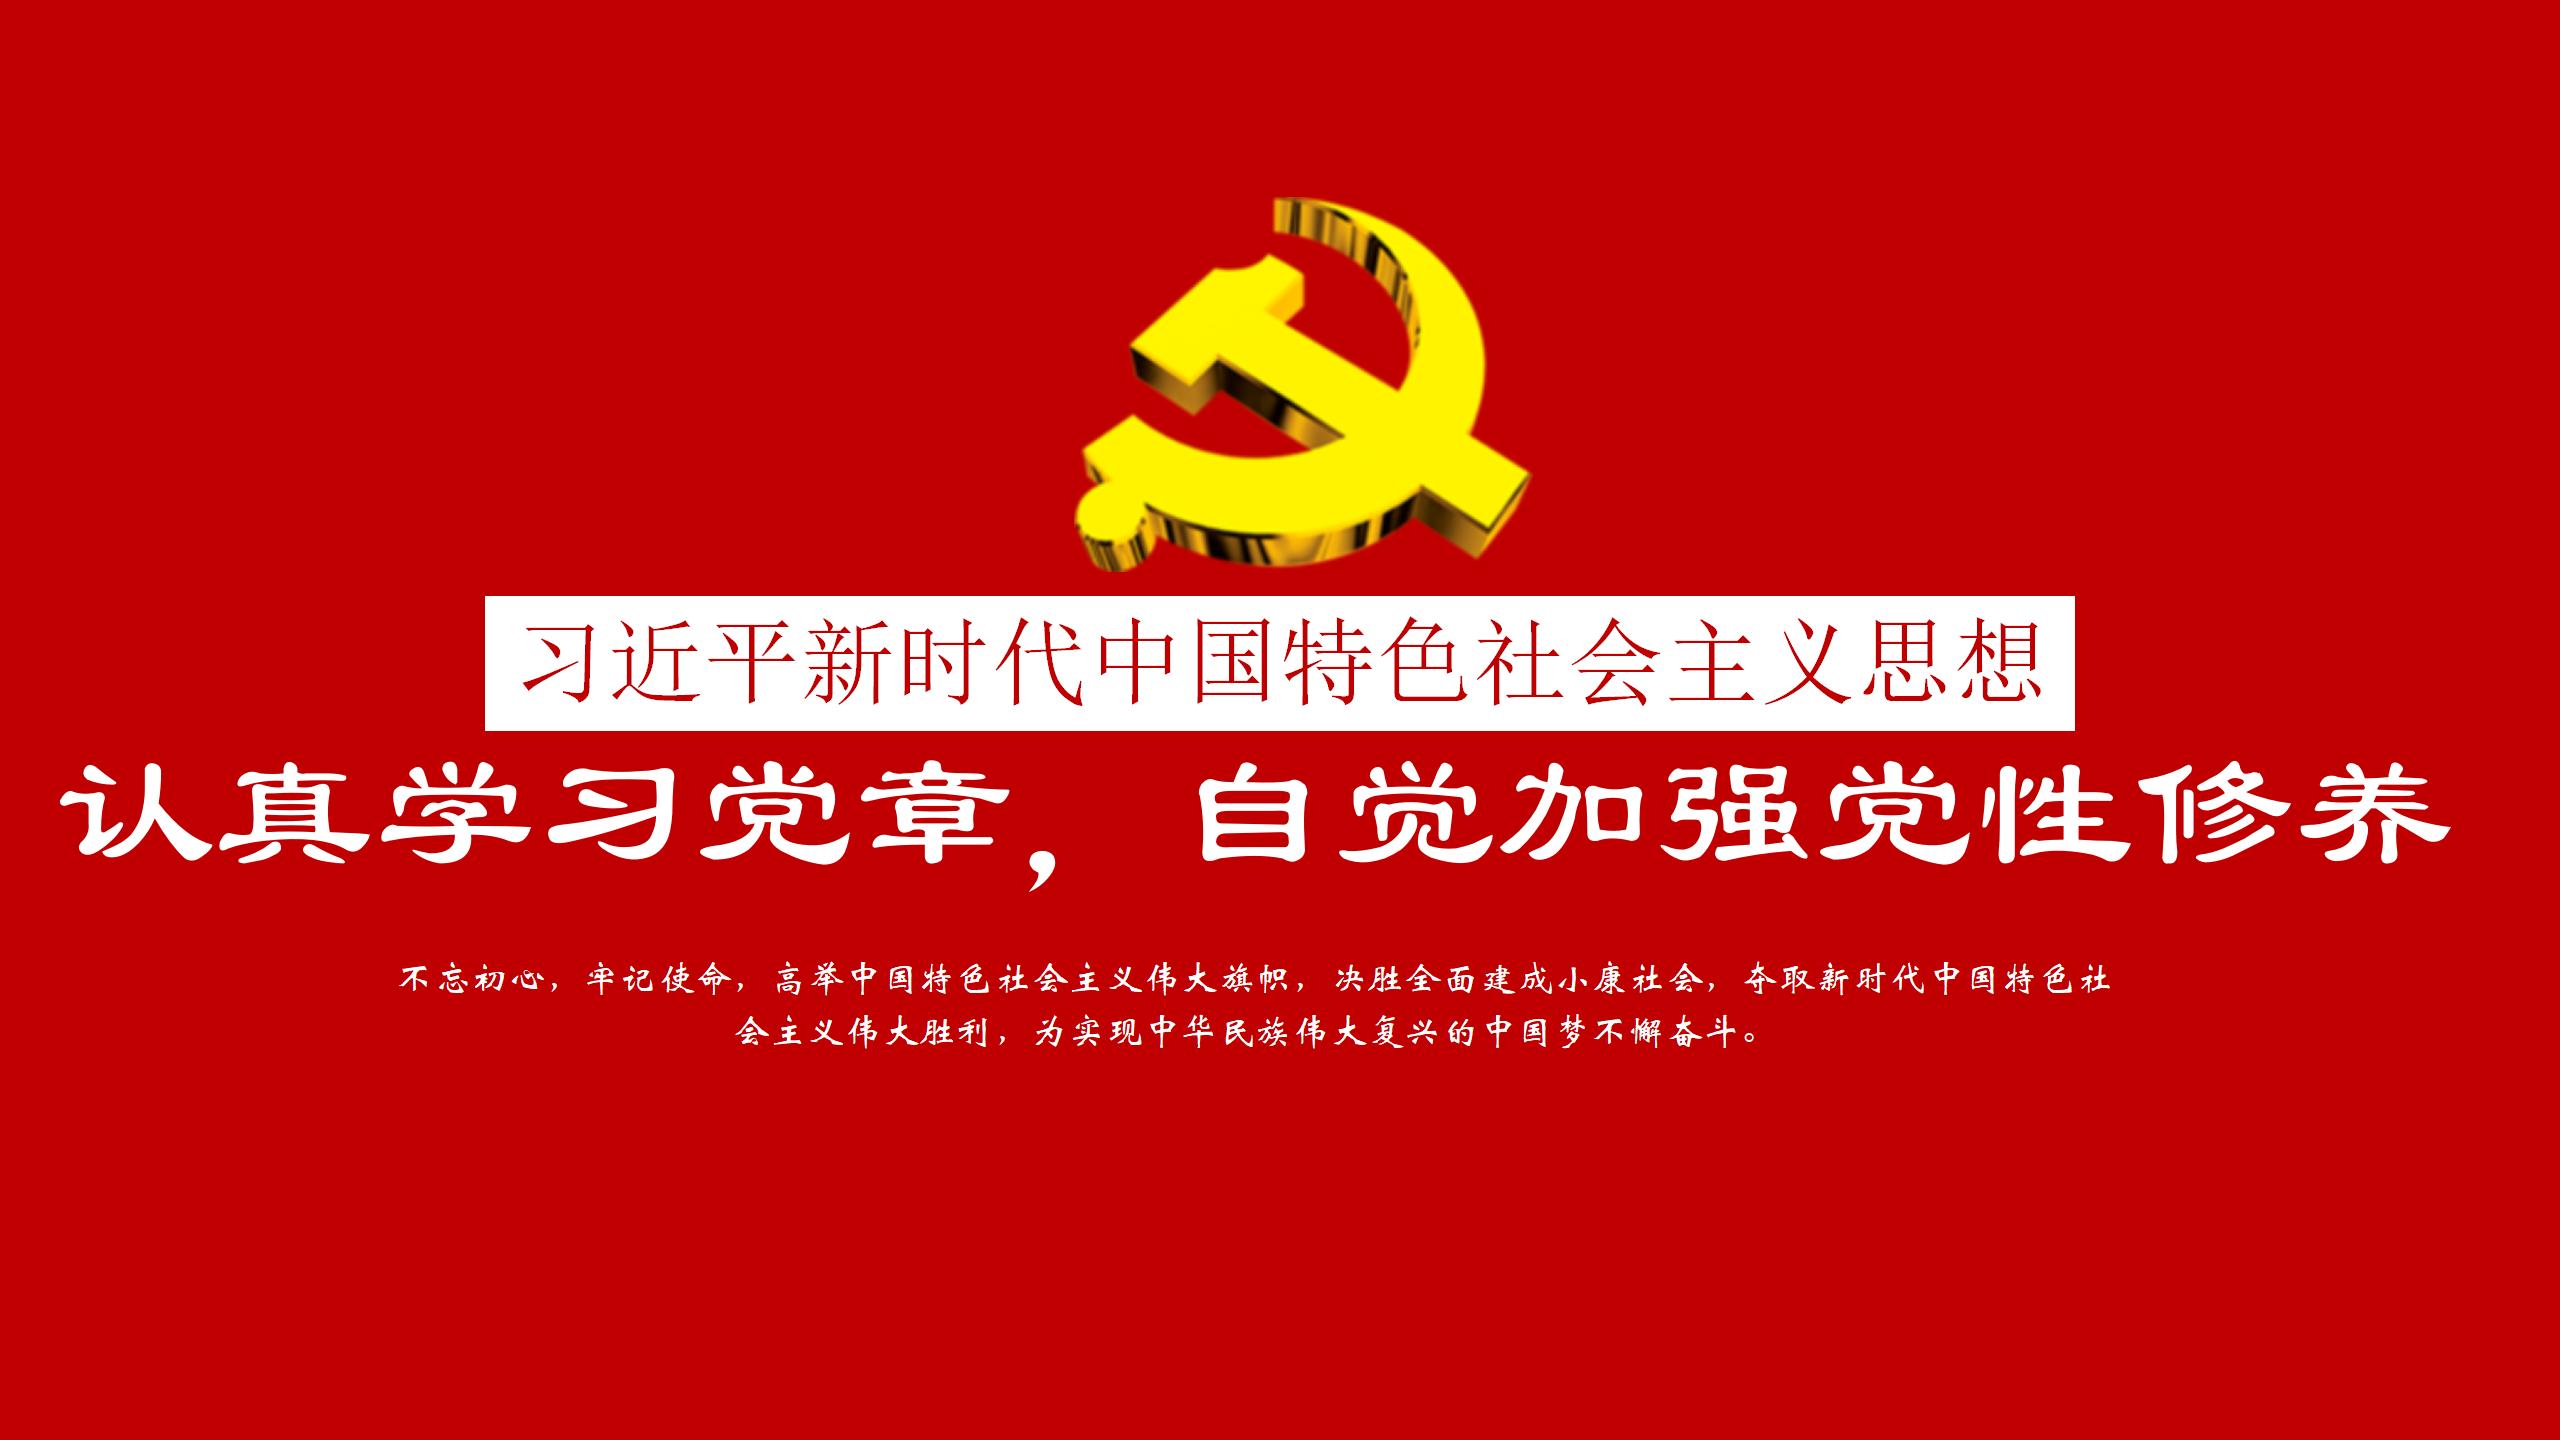 习近平新时代中国特色社会主义思想PPT1